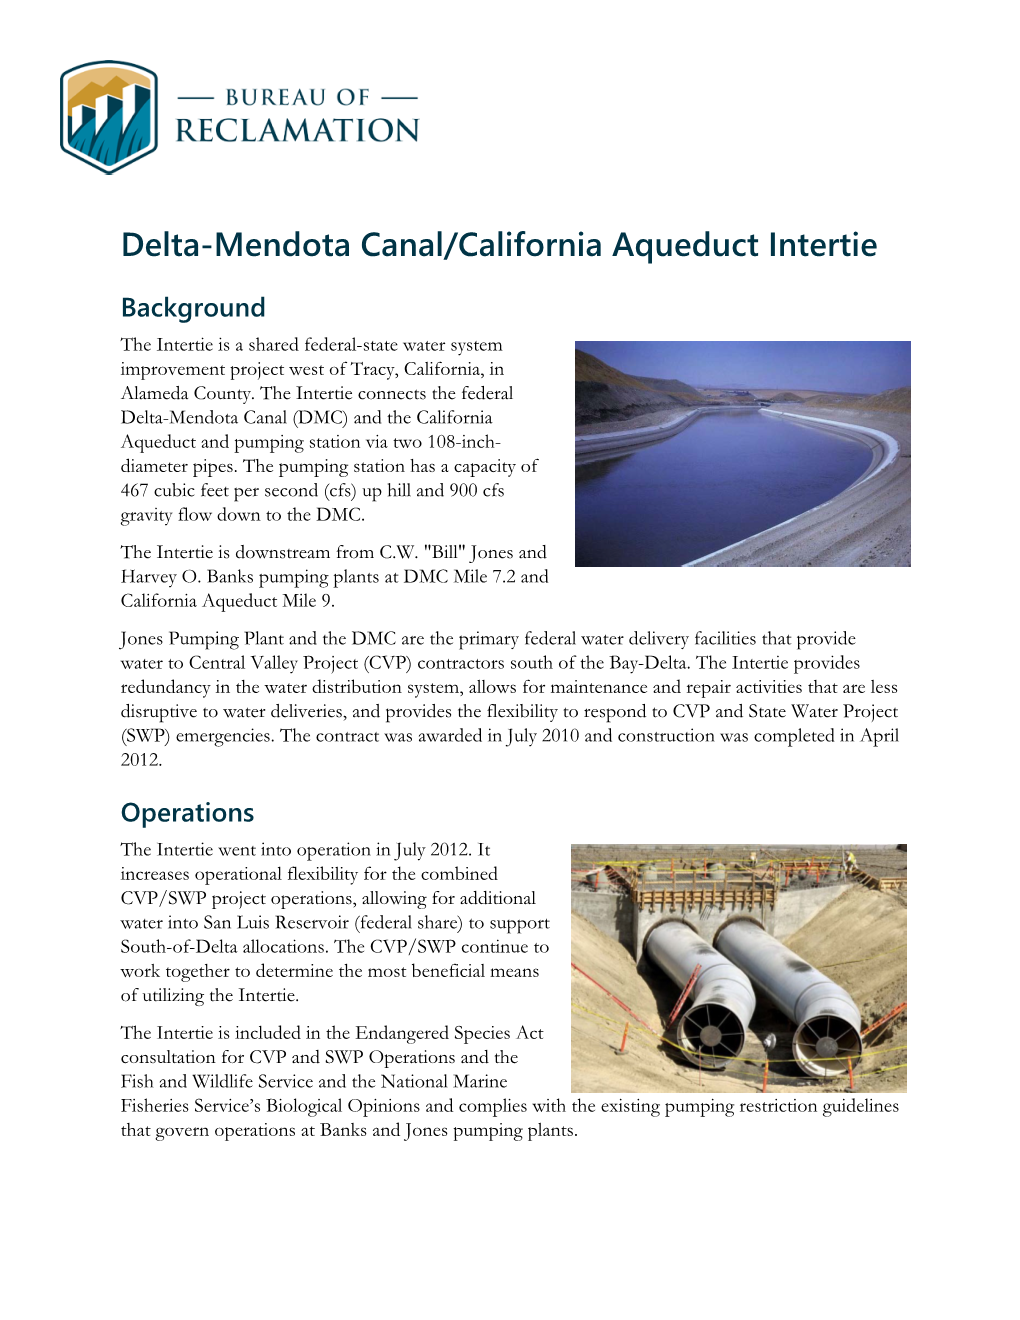 Delta-Mendota Canal/California Aqueduct Intertie